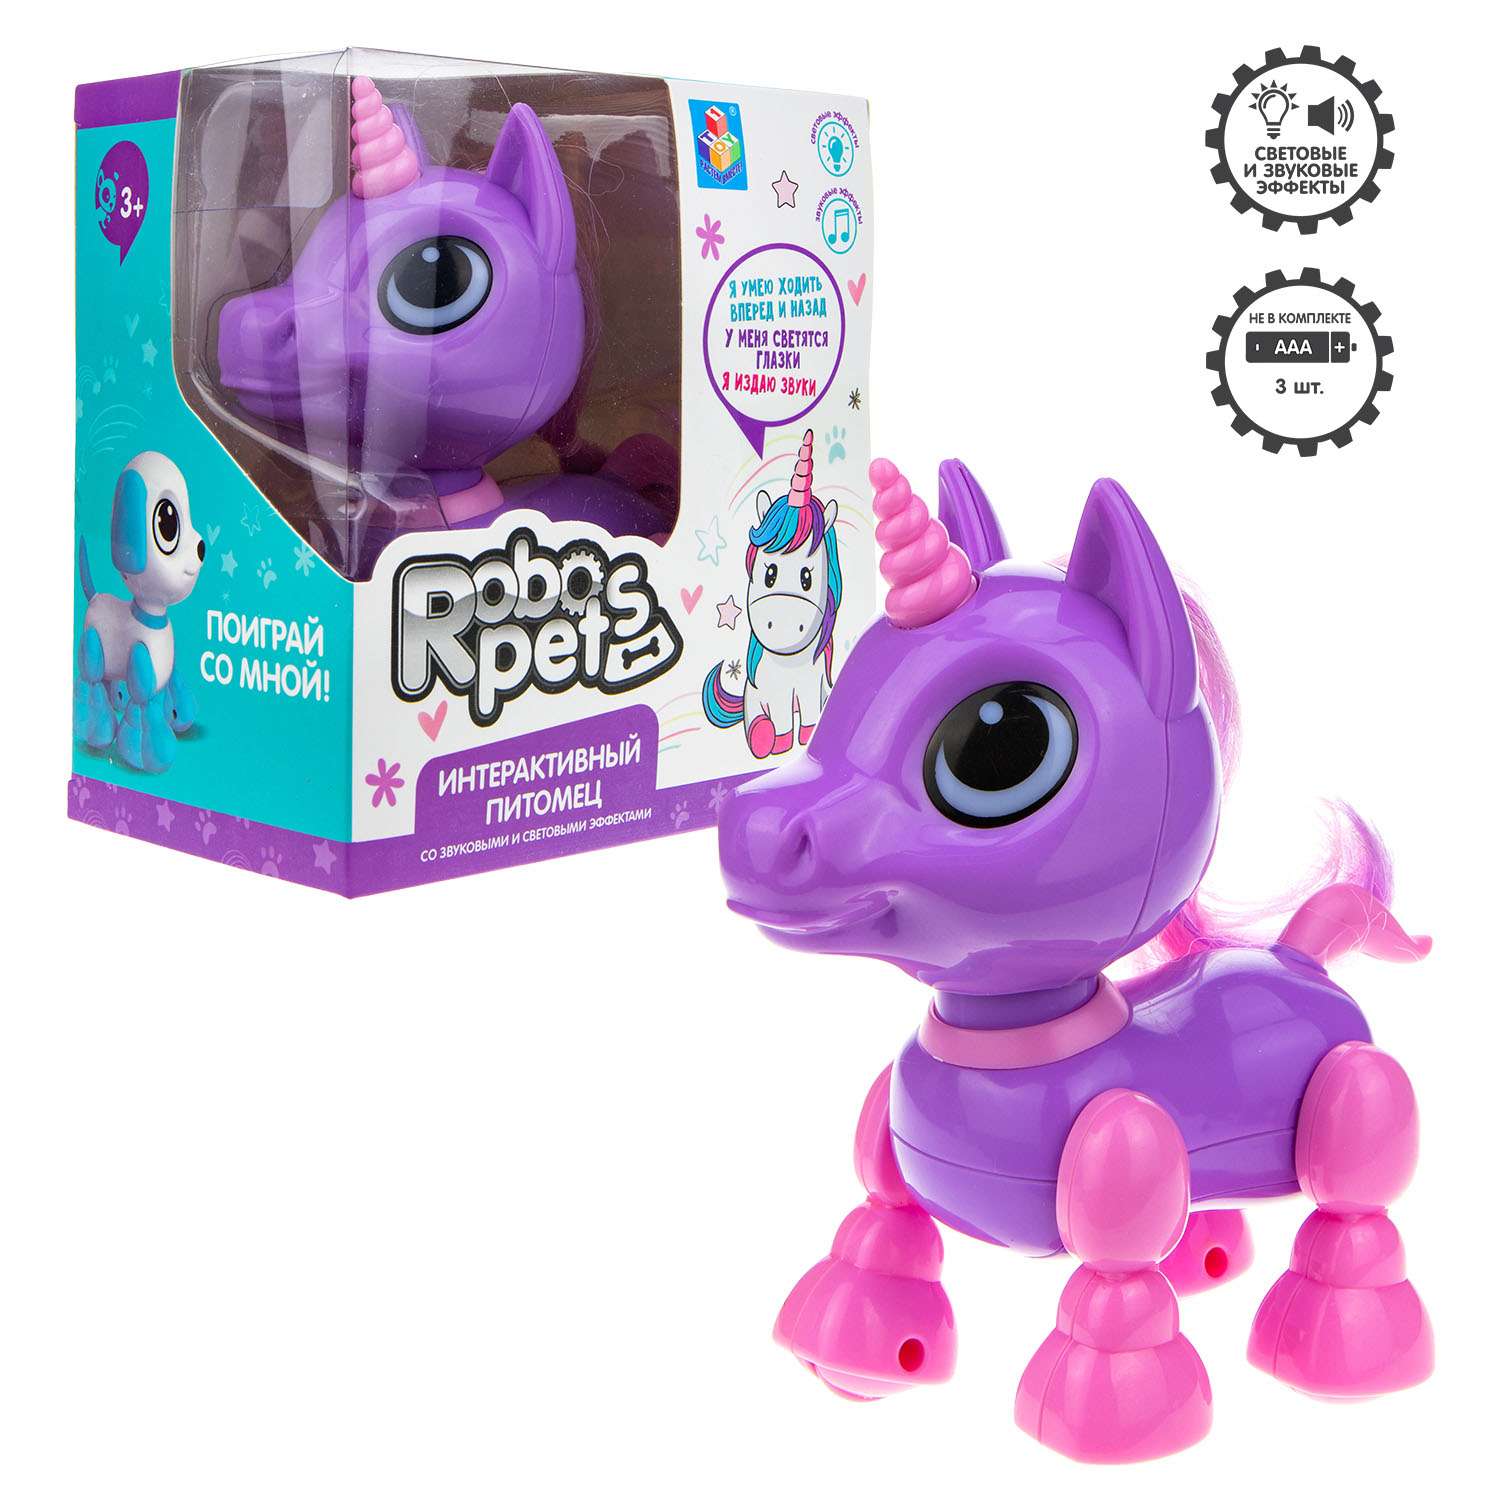 Интерактивная игрушка Robo Pets единорог фиолетовый - фото 2